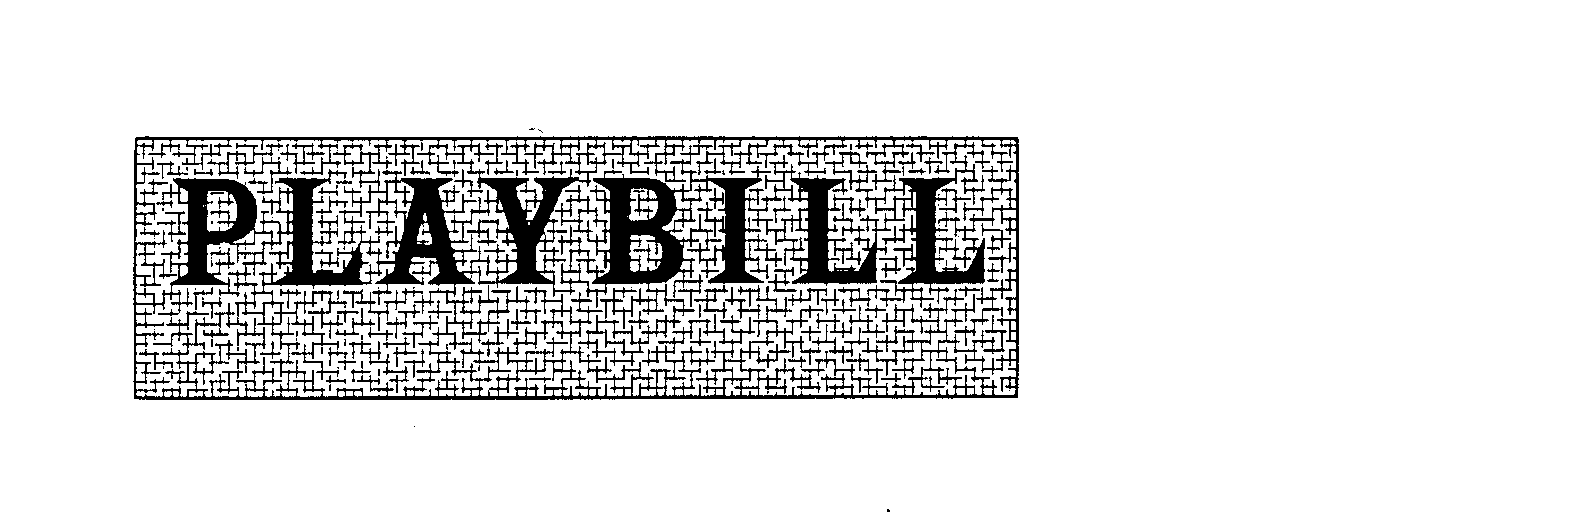 Trademark Logo PLAYBILL